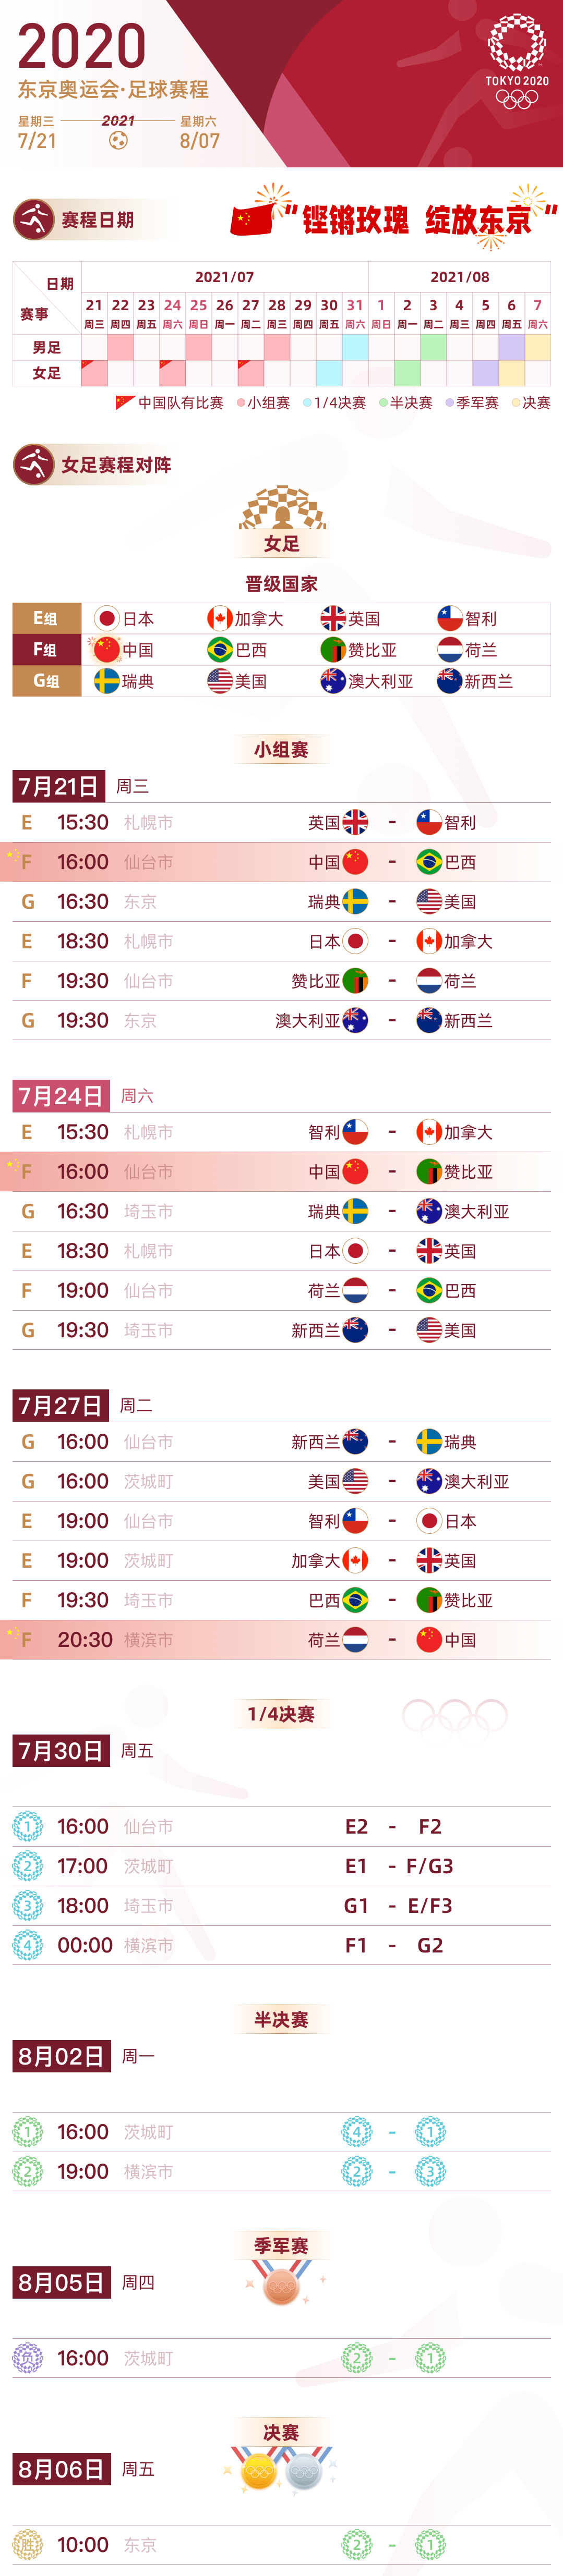 【收藏保存】2020东京奥运会足球赛程表 (男足 女足)完整版